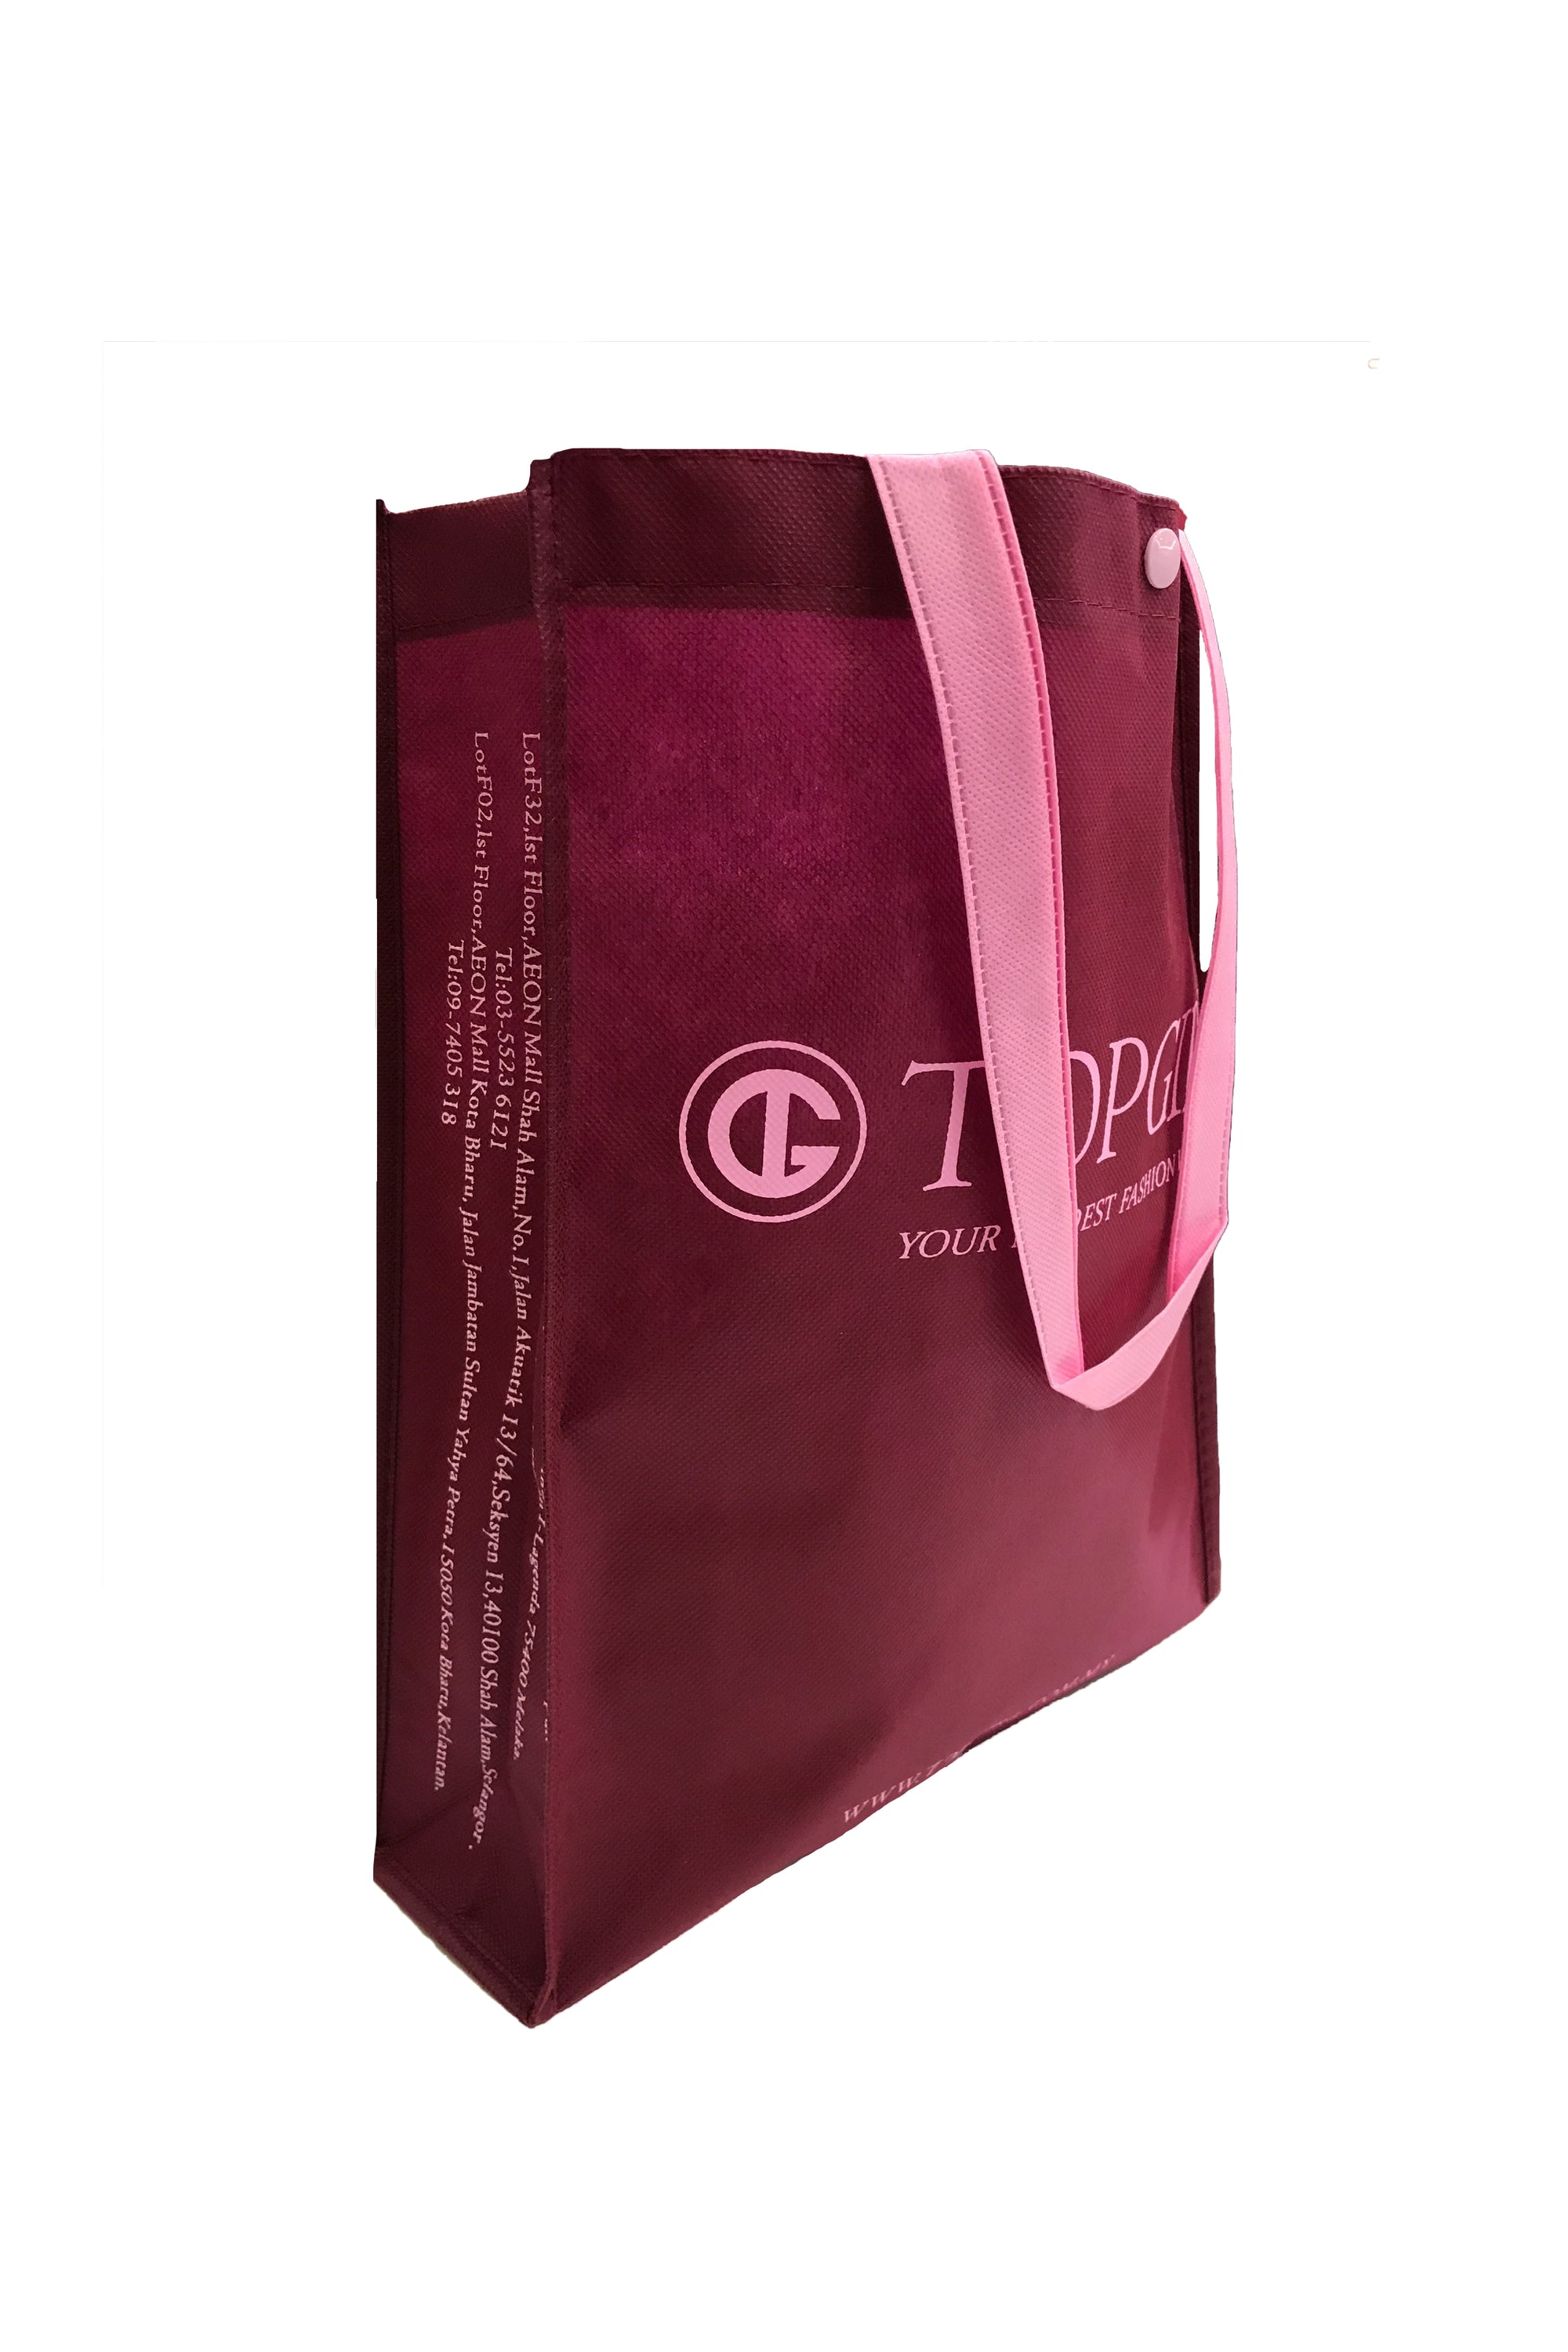 TOPGIRL Recycle Bag (Medium)